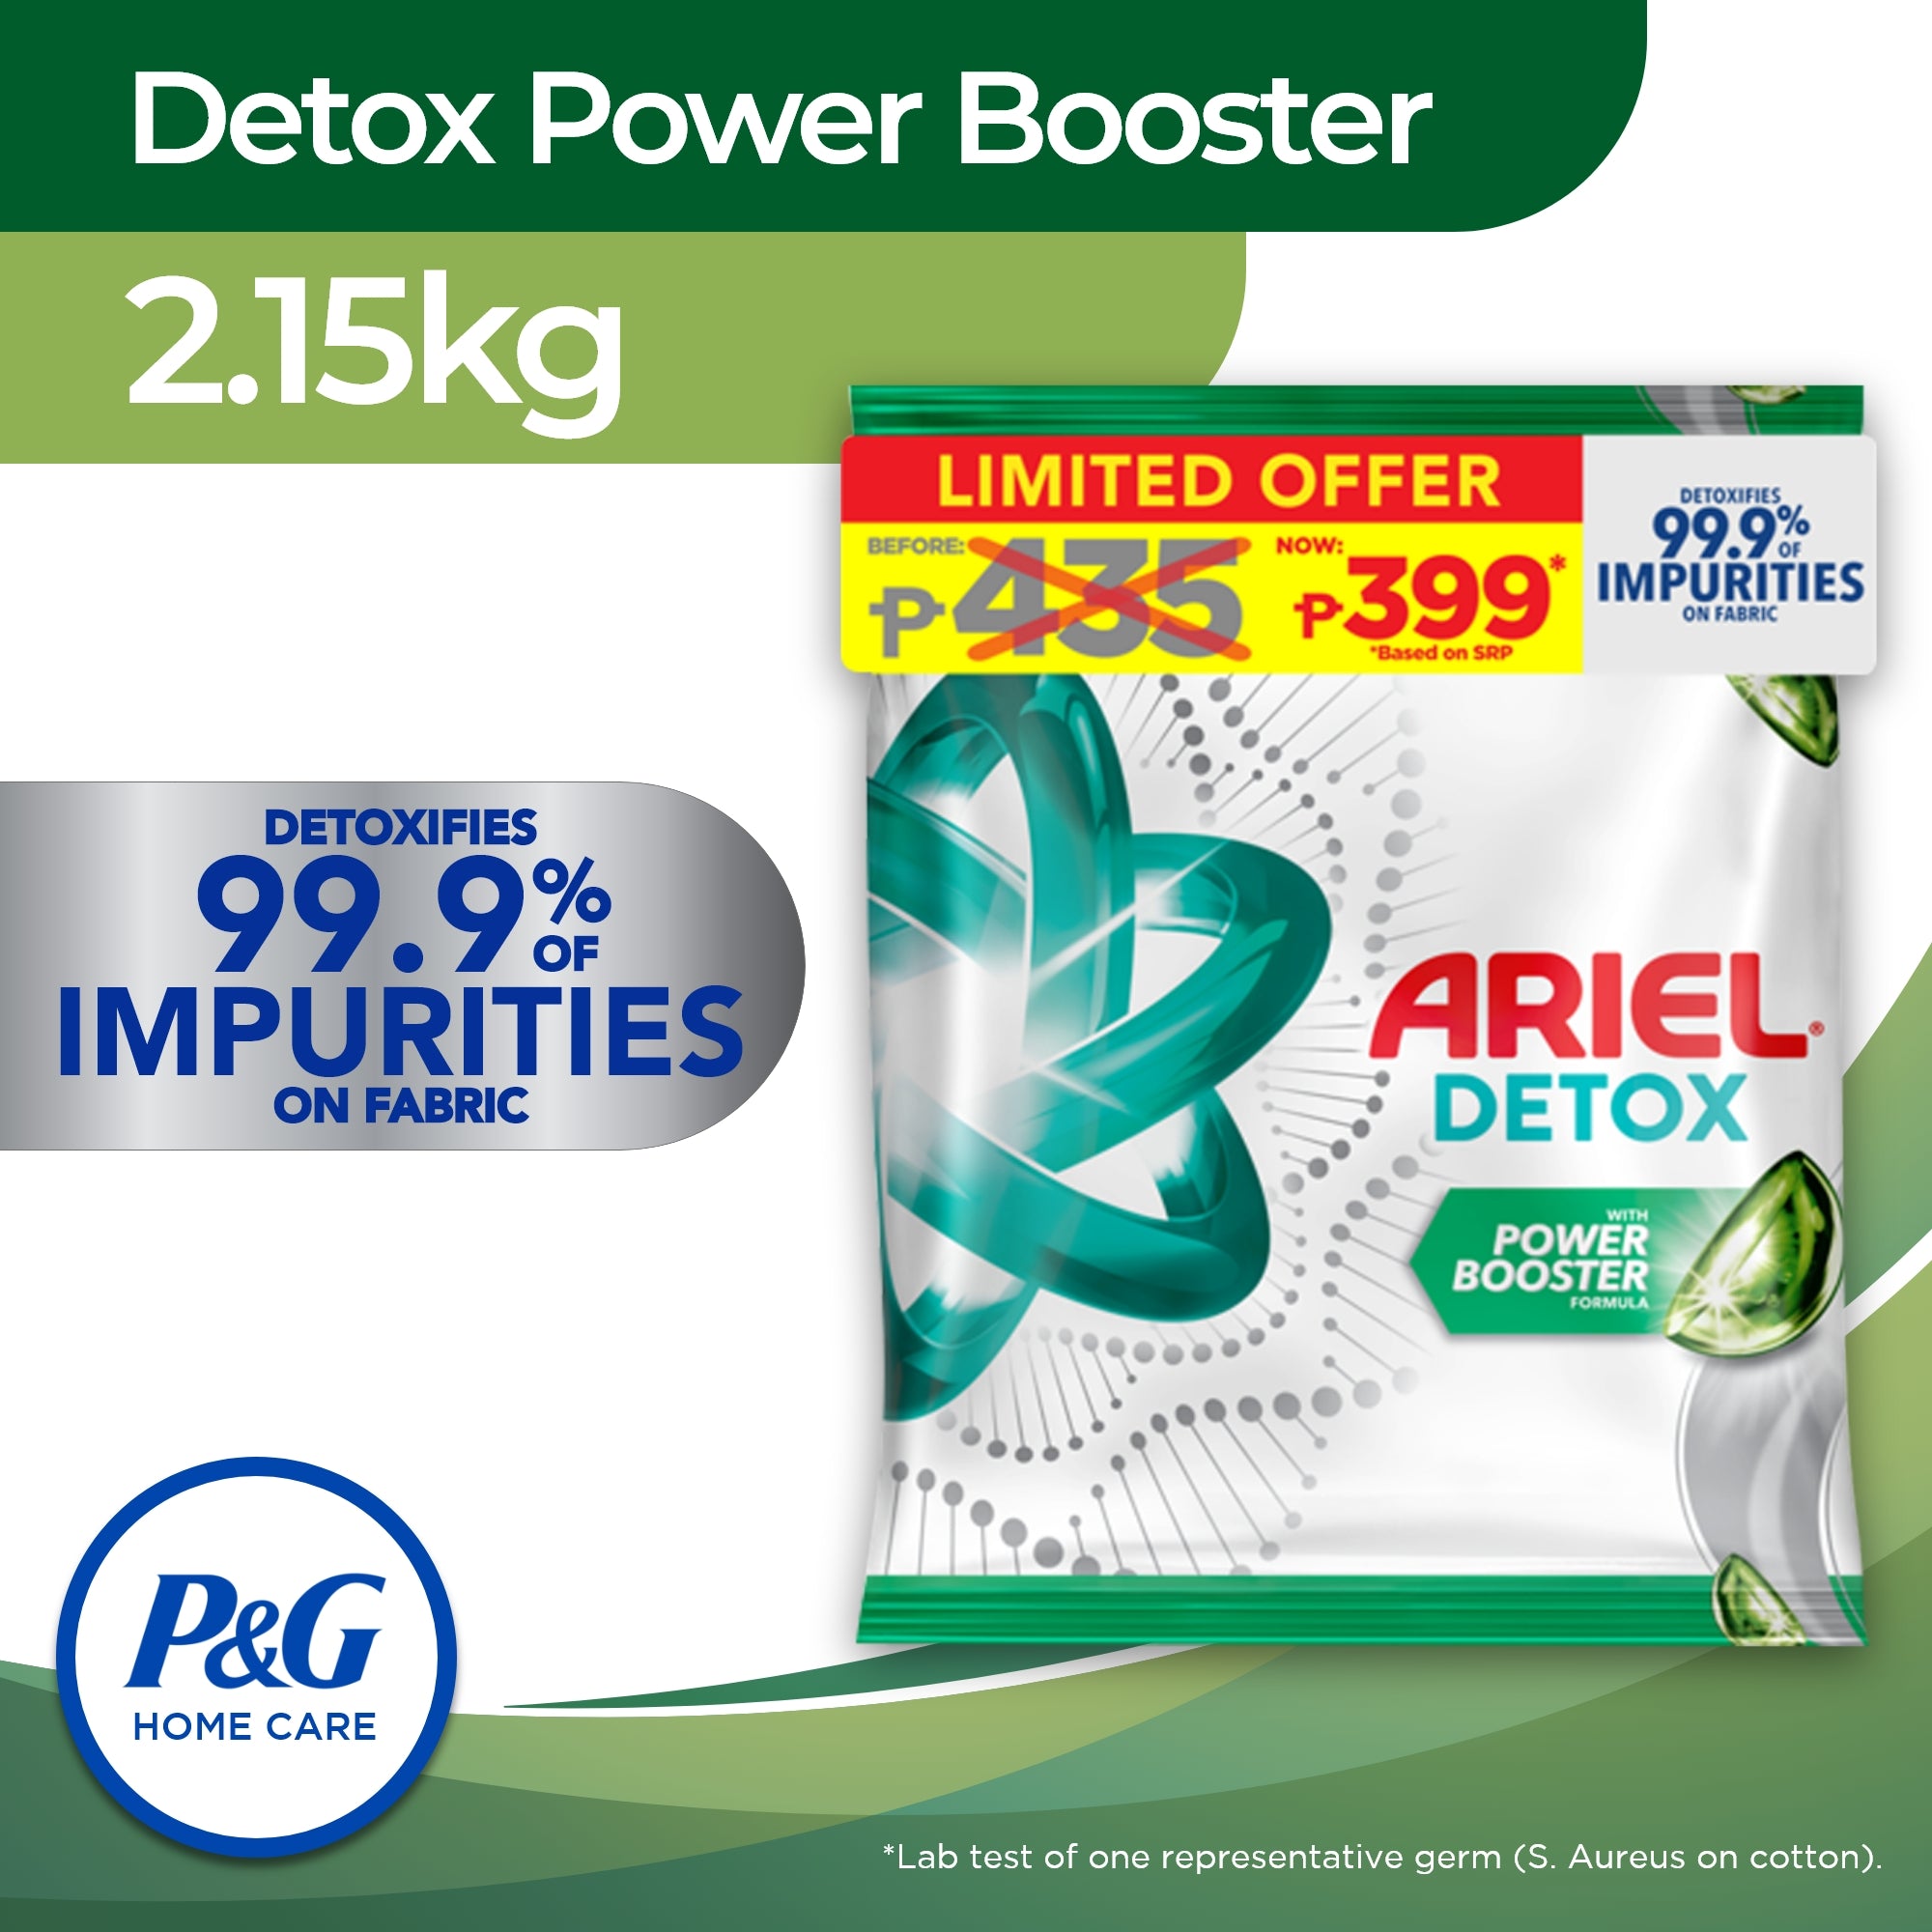 Ariel Detox Powder Detergent with Power Booster 2.15Kg (Laundry Detergent, Laundry Powder)